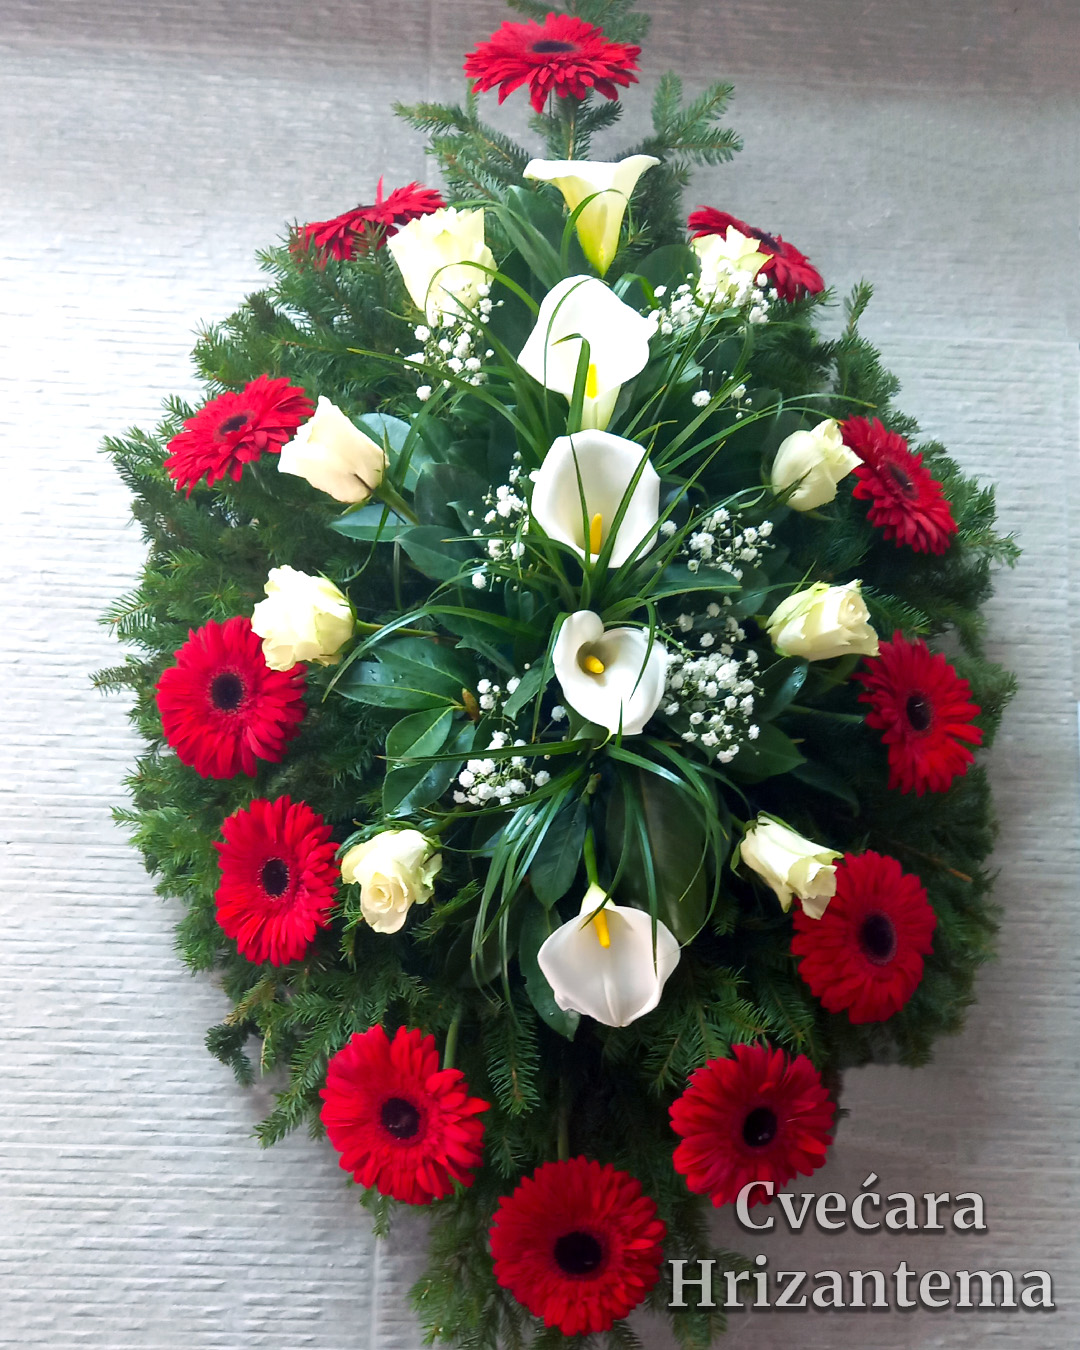 Prirodni venac cvecara orlovaca bele kale bele ruze crveno crni gerber prirodni venac